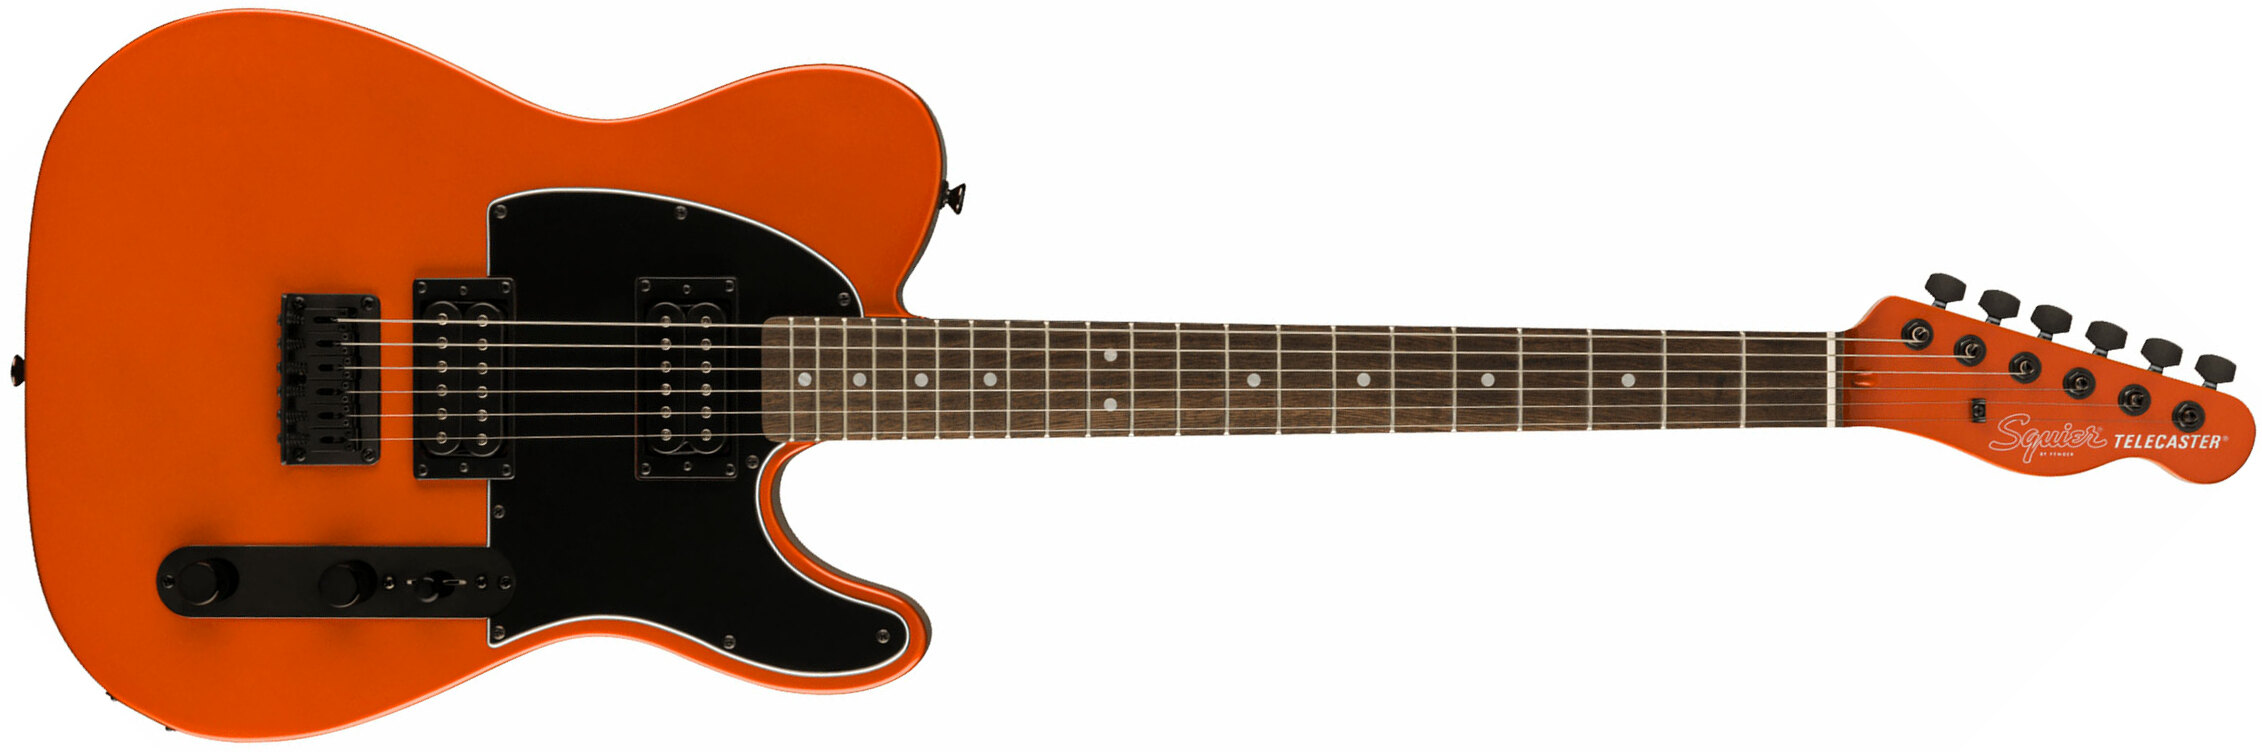 Squier Tele Affinity Hh Fsr 2h Ht Lau - Metallic Orange - Televorm elektrische gitaar - Main picture